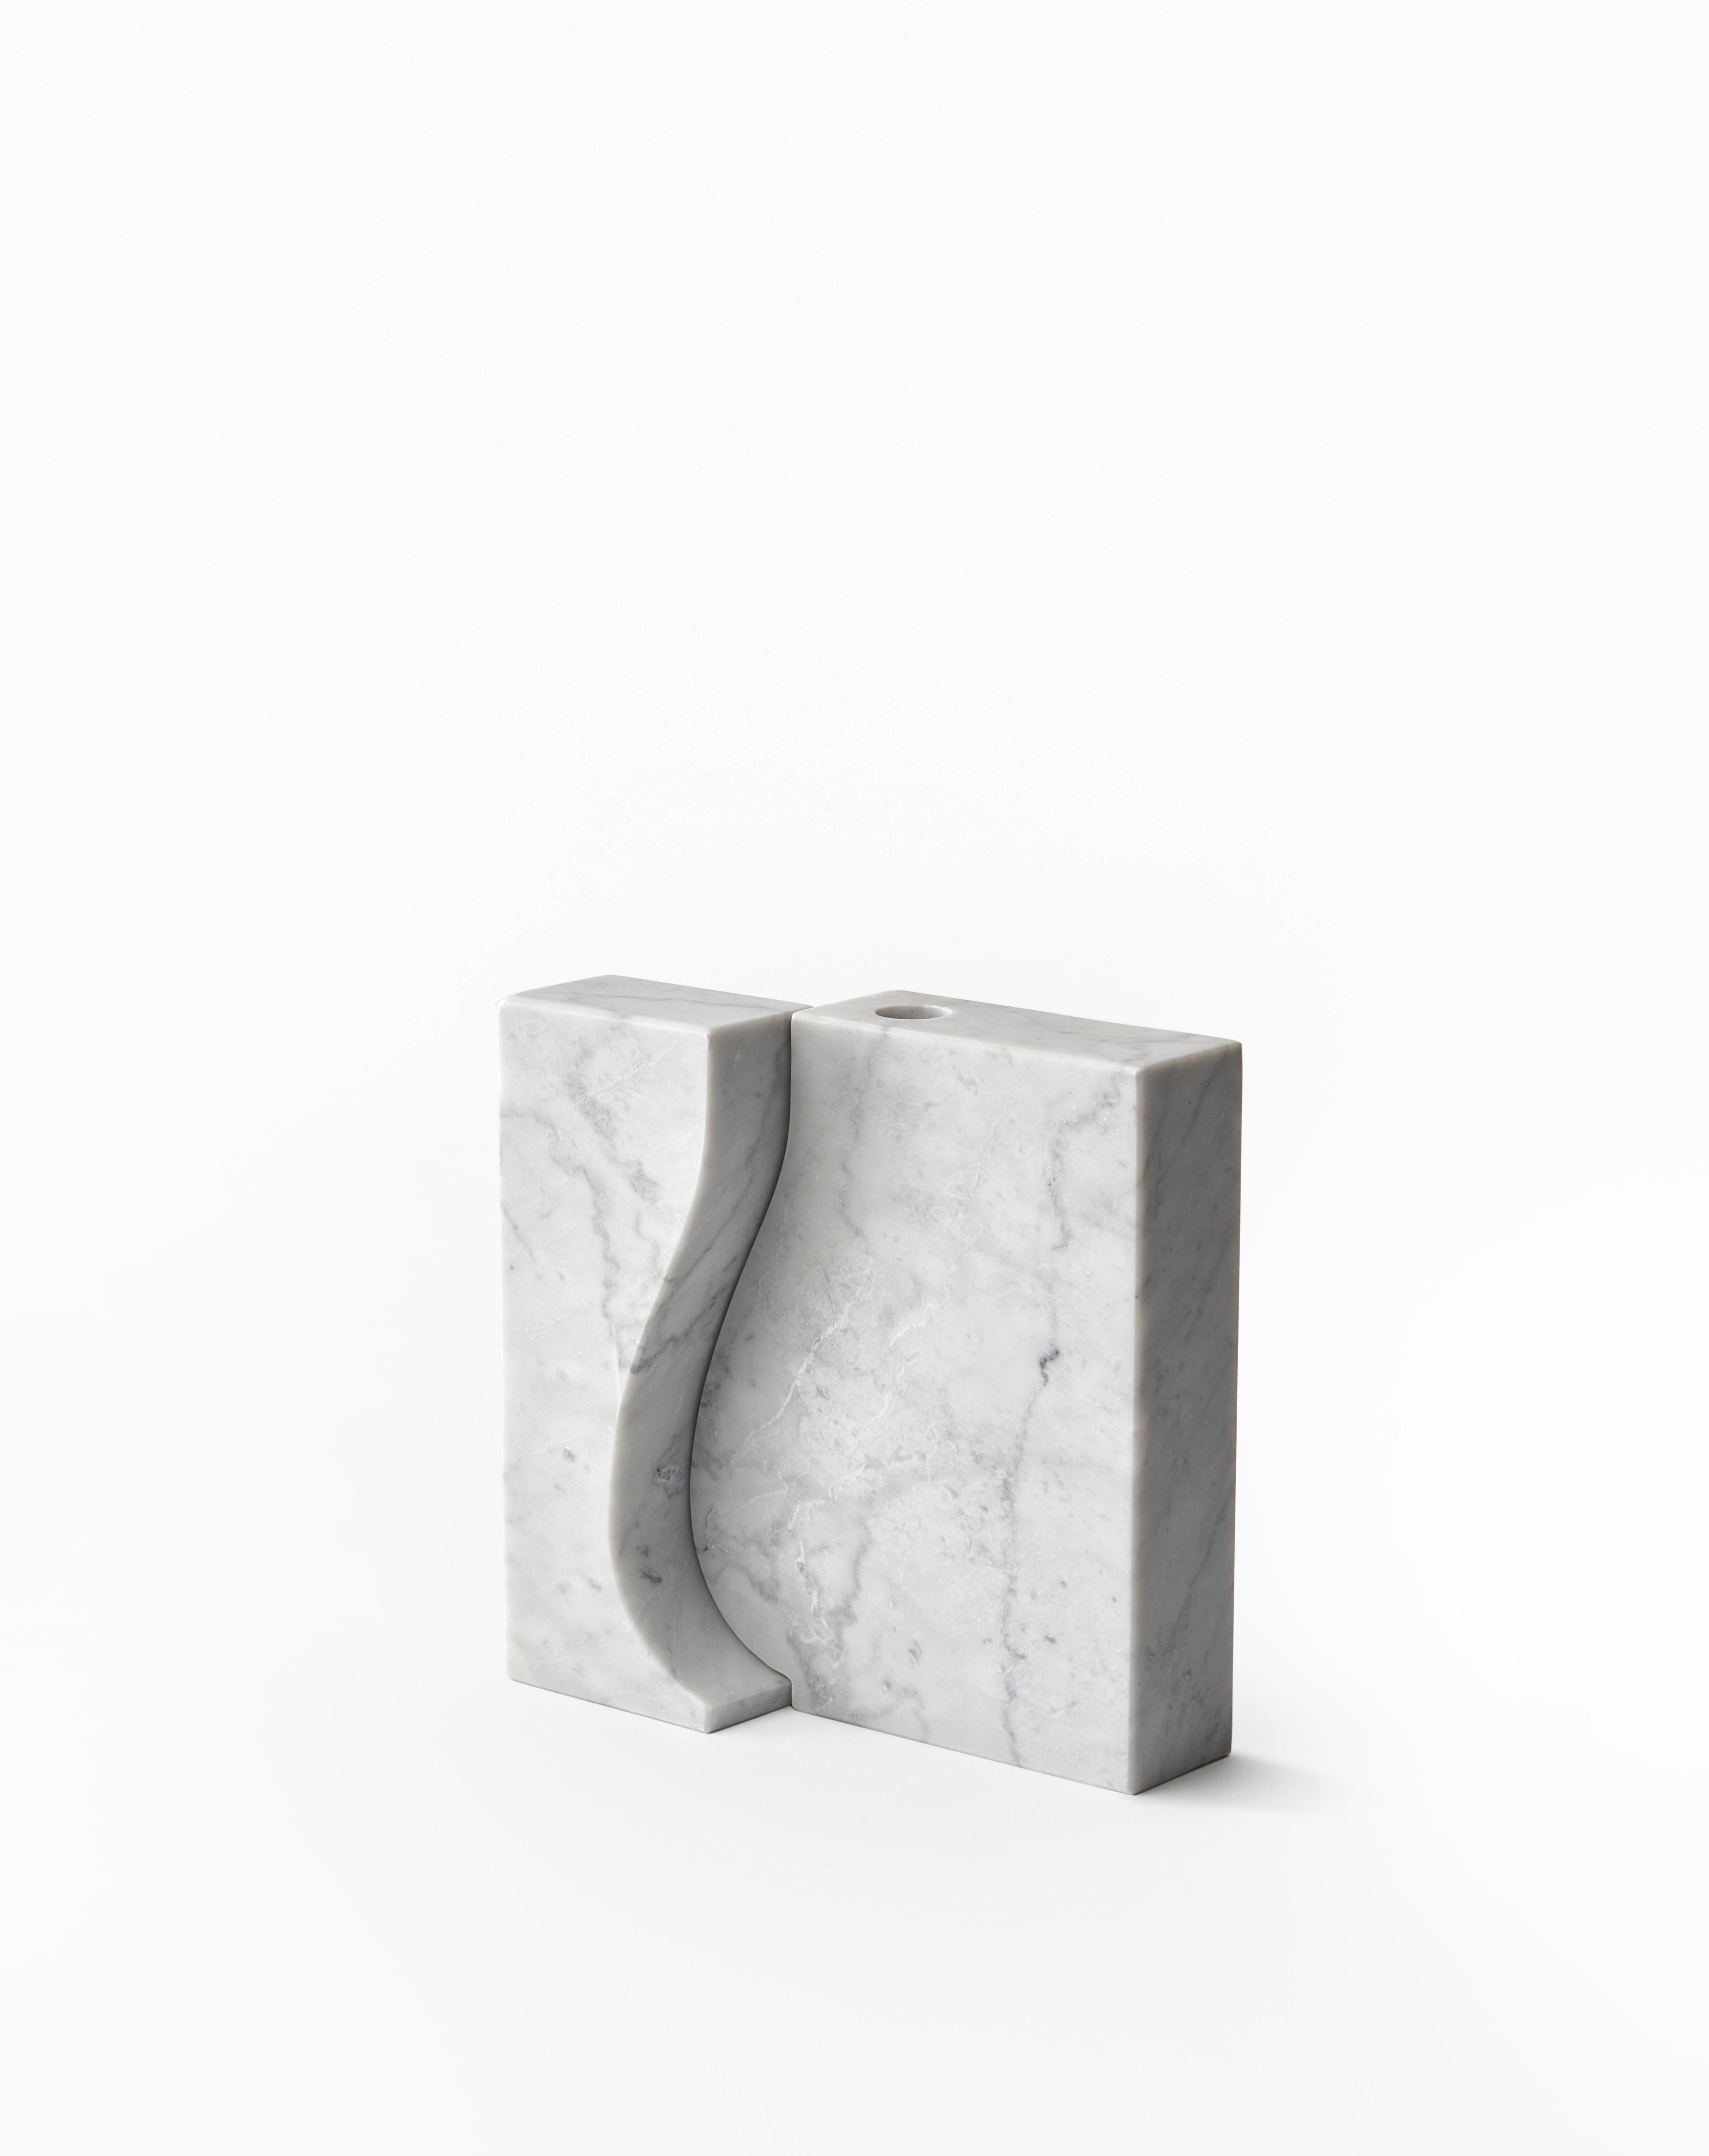 Kleine Vase aus Recisi-Marmor - Moreno Ratti
Abmessungen: T 5 x B 20 x H 20 cm
MATERIALIEN: Weißer Carrara-Marmor.
Erhältlich in anderen Größen und Marmor.

Die Erinnerung an ein Kinderspiel, wie das Spiel mit einfachen, auf Papier geschnittenen